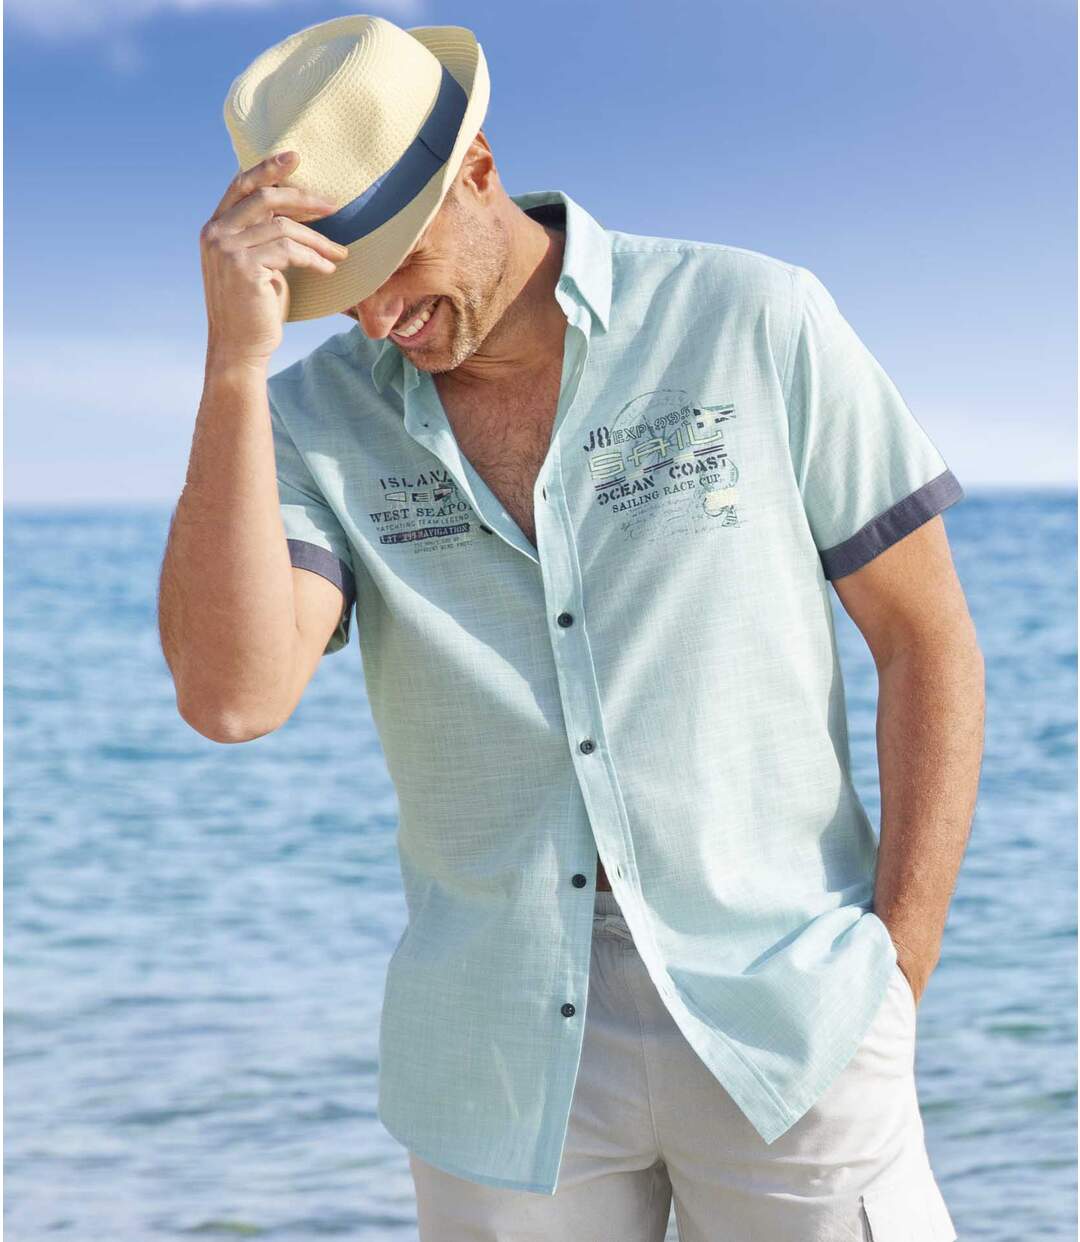 Men's Turquoise Poplin Shirt Atlas For Men